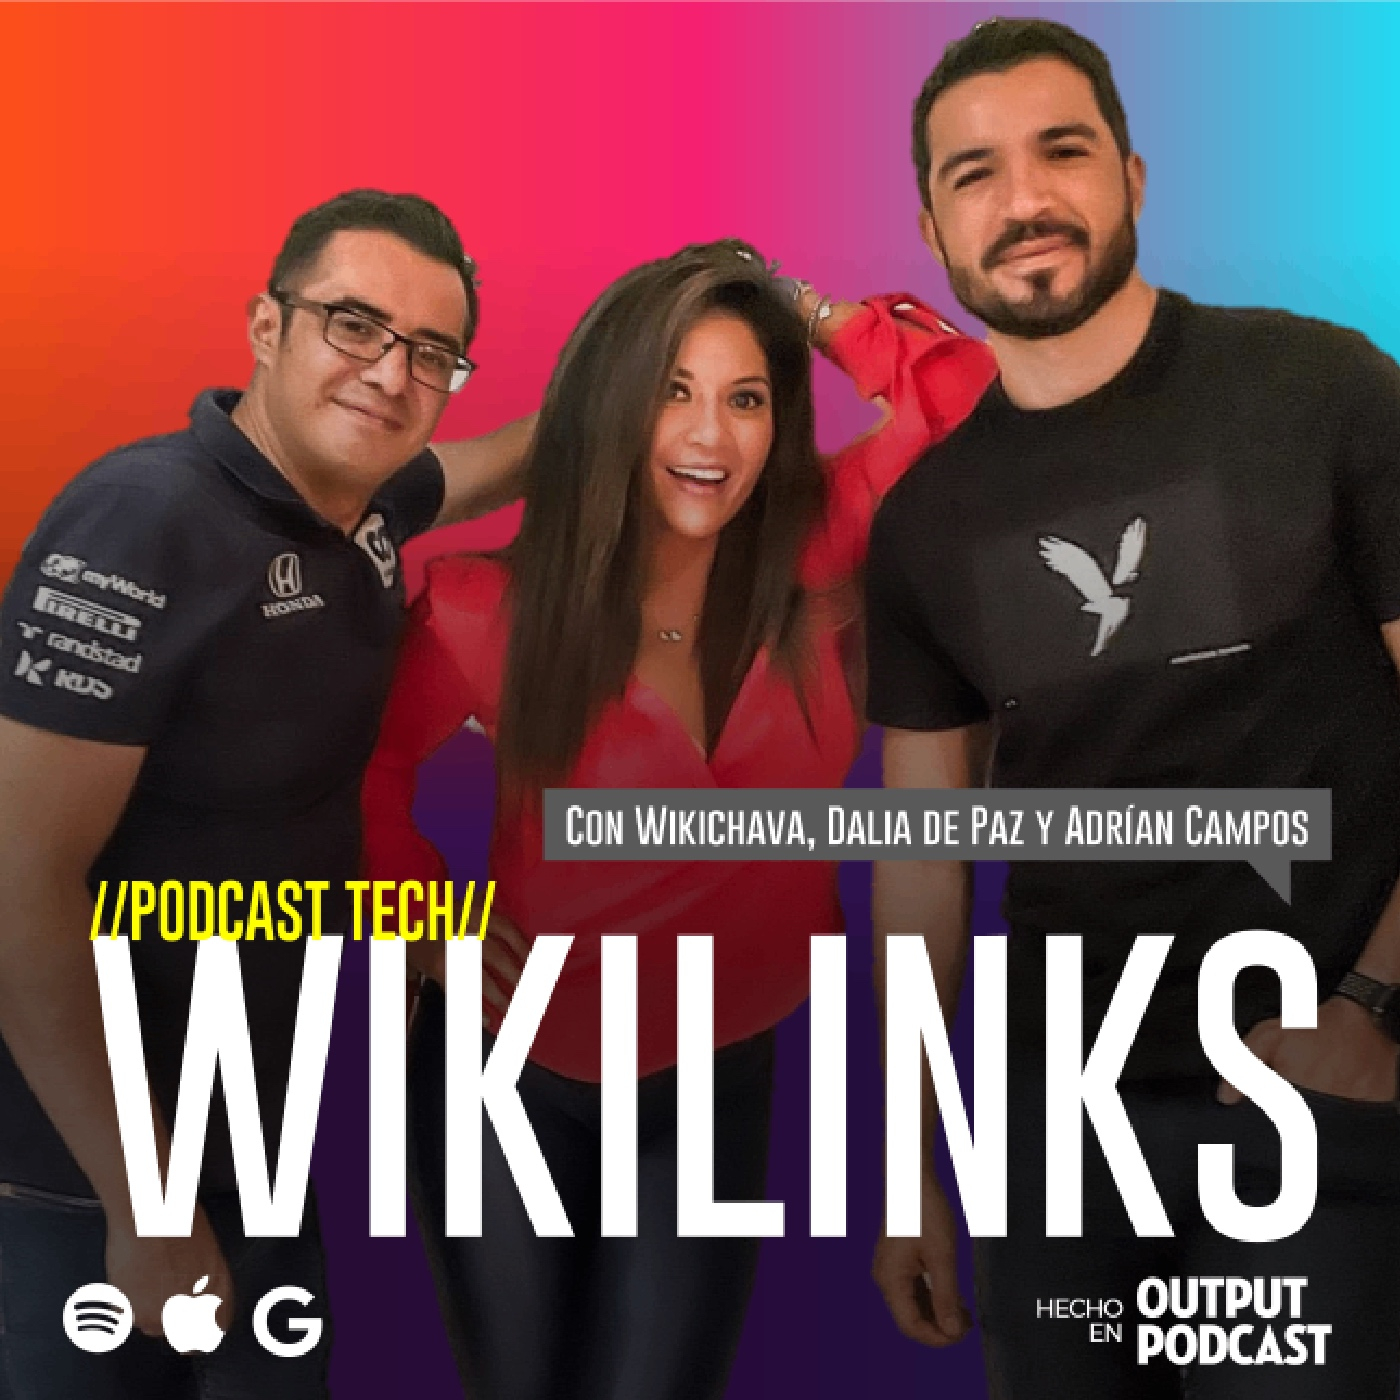 WikiLinks